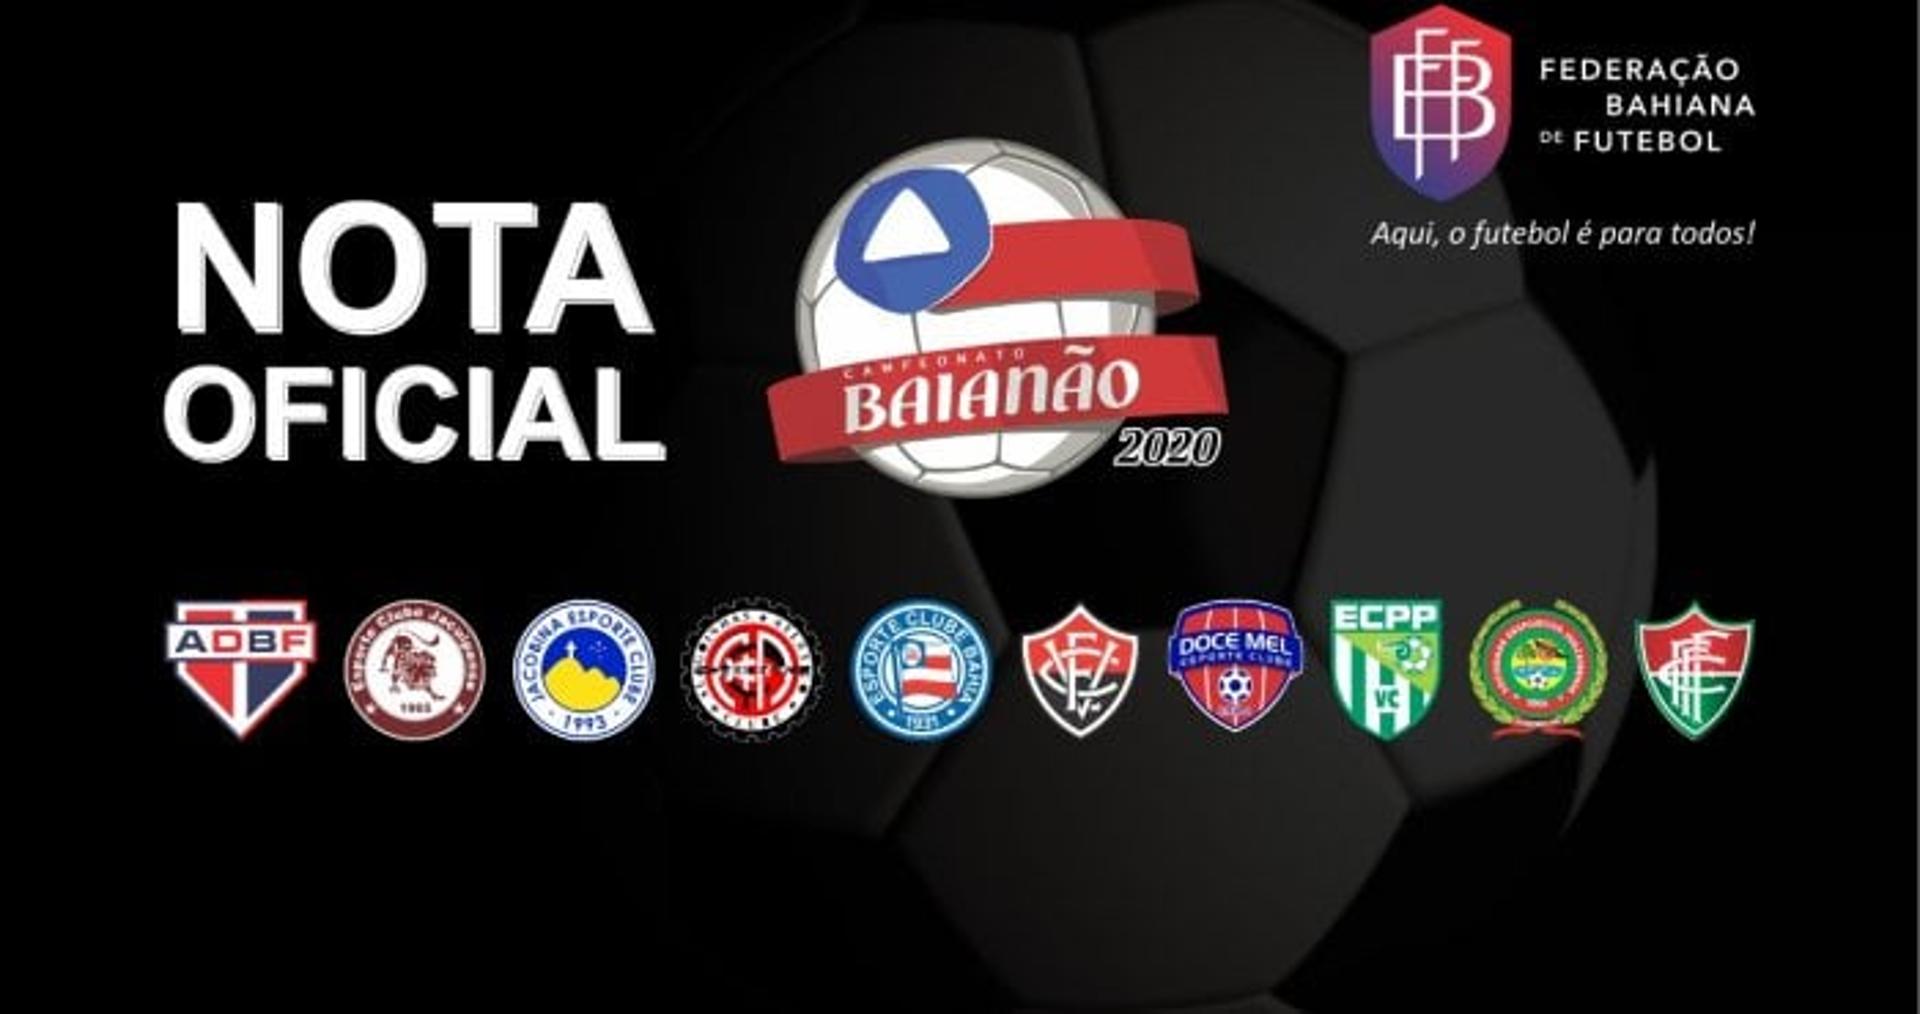 Federação Bahiana de Futebol em Nota Oficial